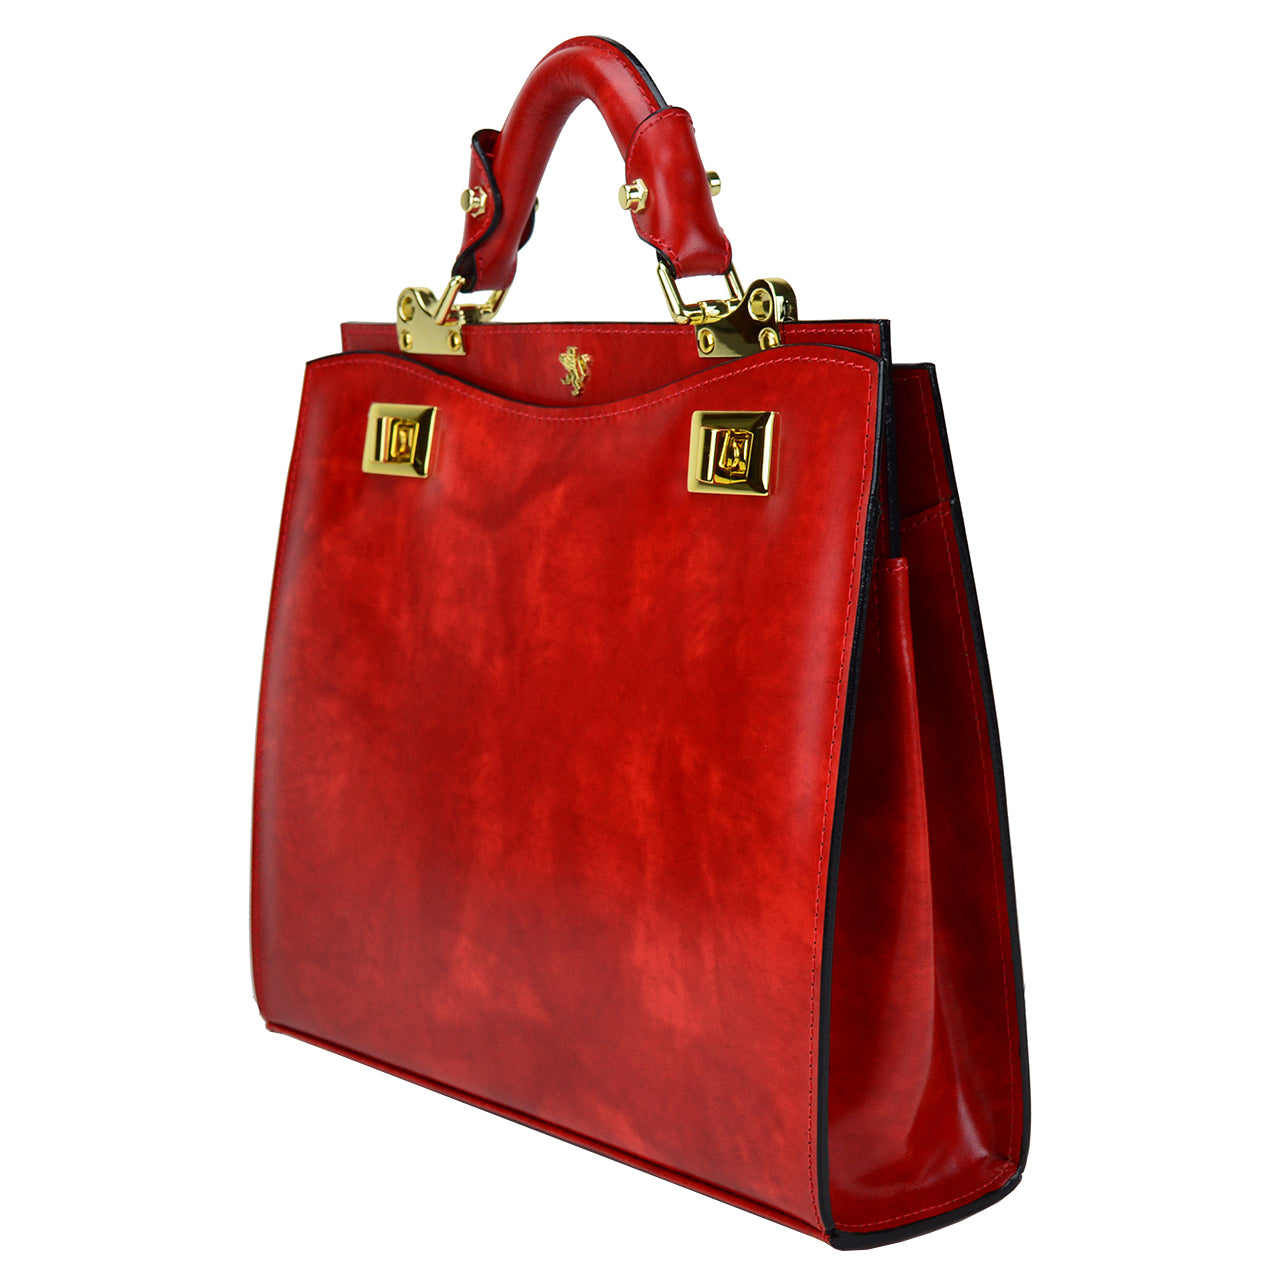 Pratesi Anna Maria Luisa de' Medici Medium Lady Bag in genuine Italian leather - Radica